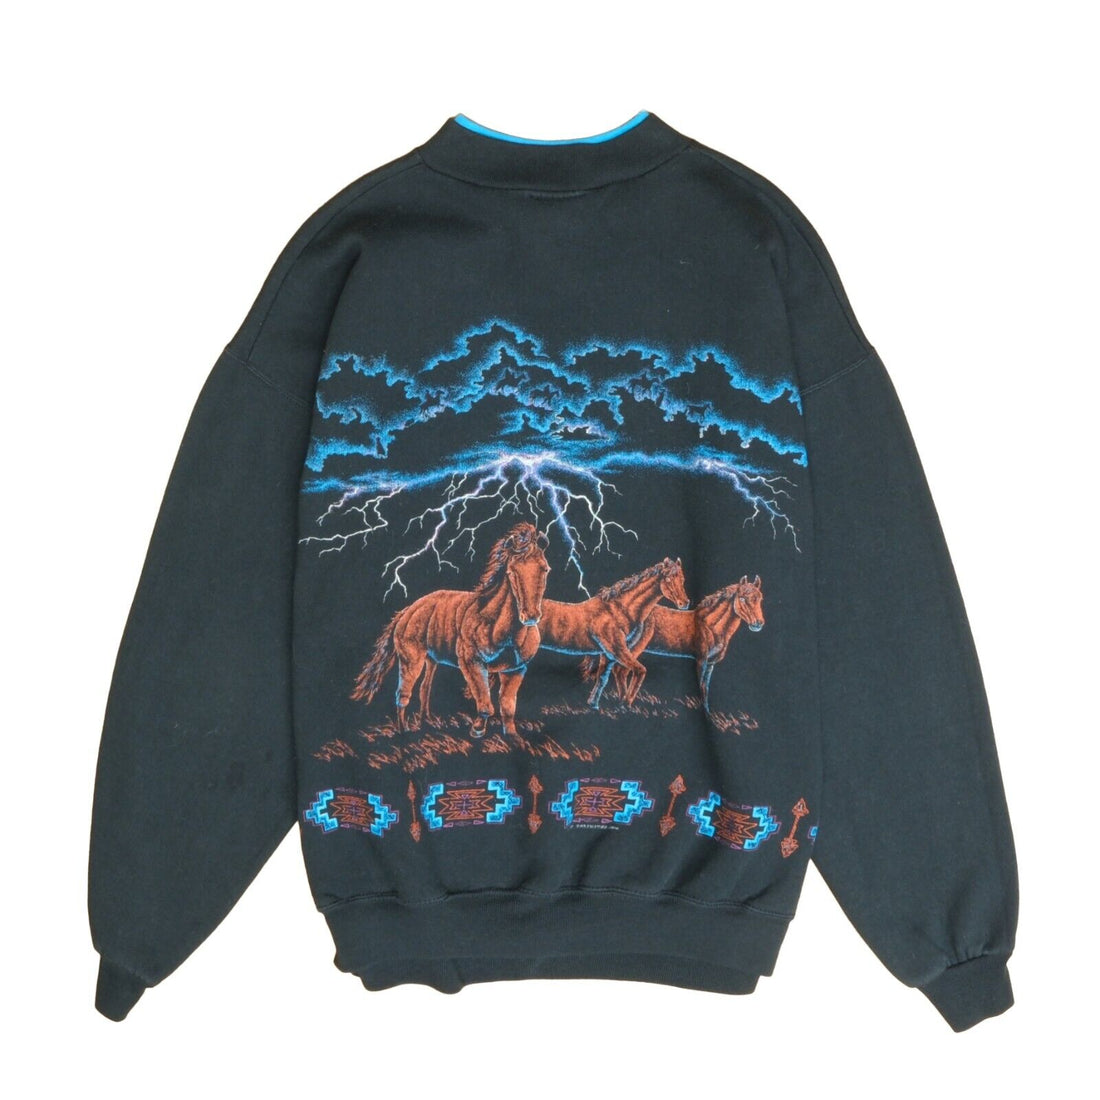 Vintage Horse Lightning Sweatshirt Size Large Aztec Western Nature Thunder